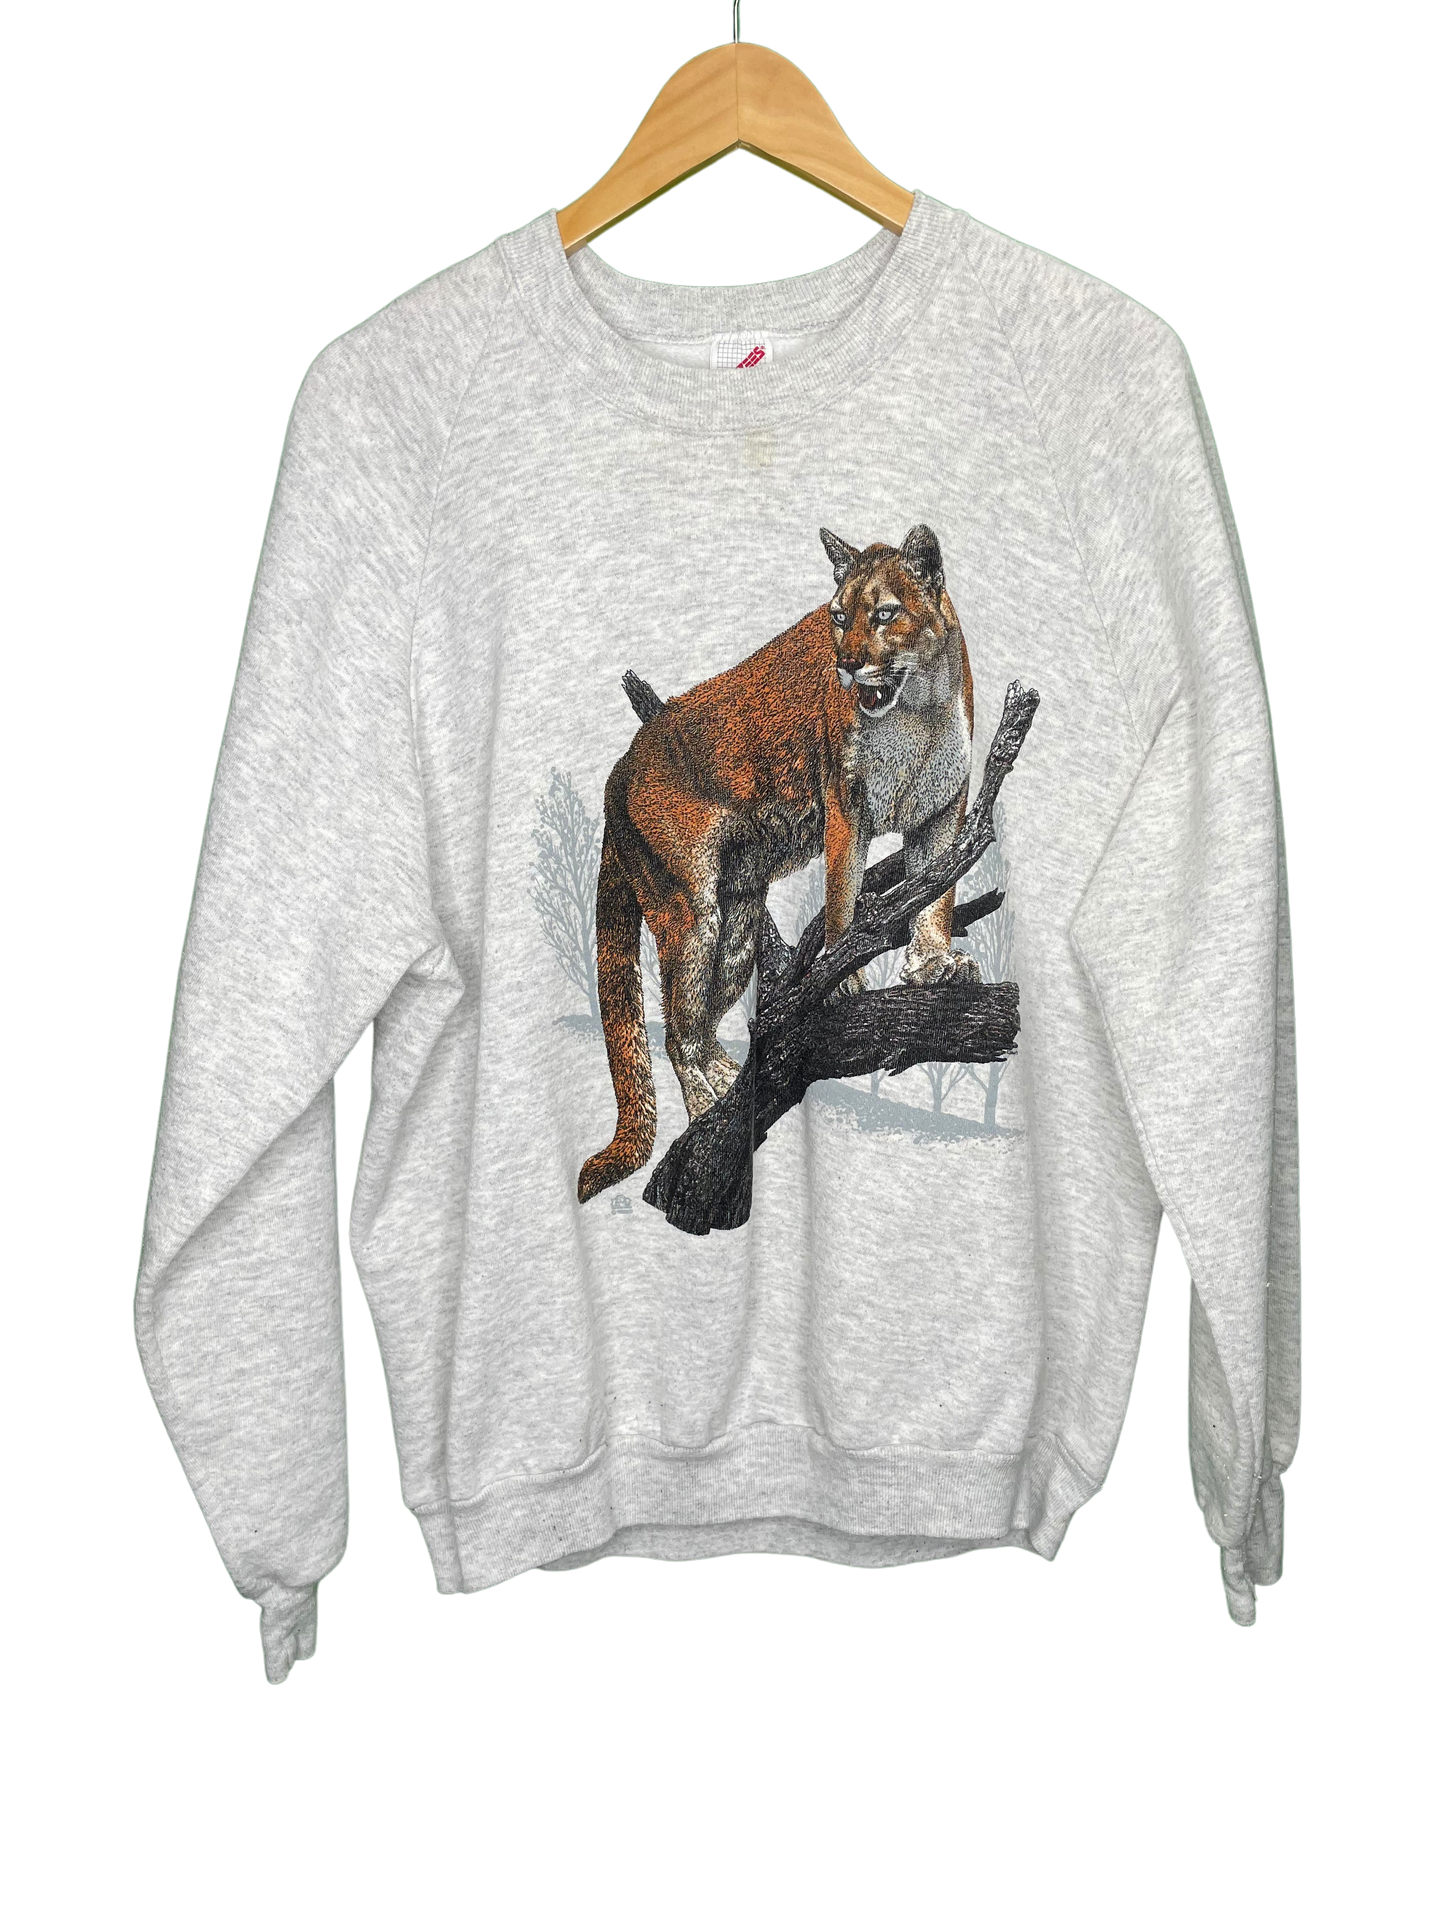 Vintage XL Cougar Big Cat Wildlife Outdoor Crewneck Sweatshirt